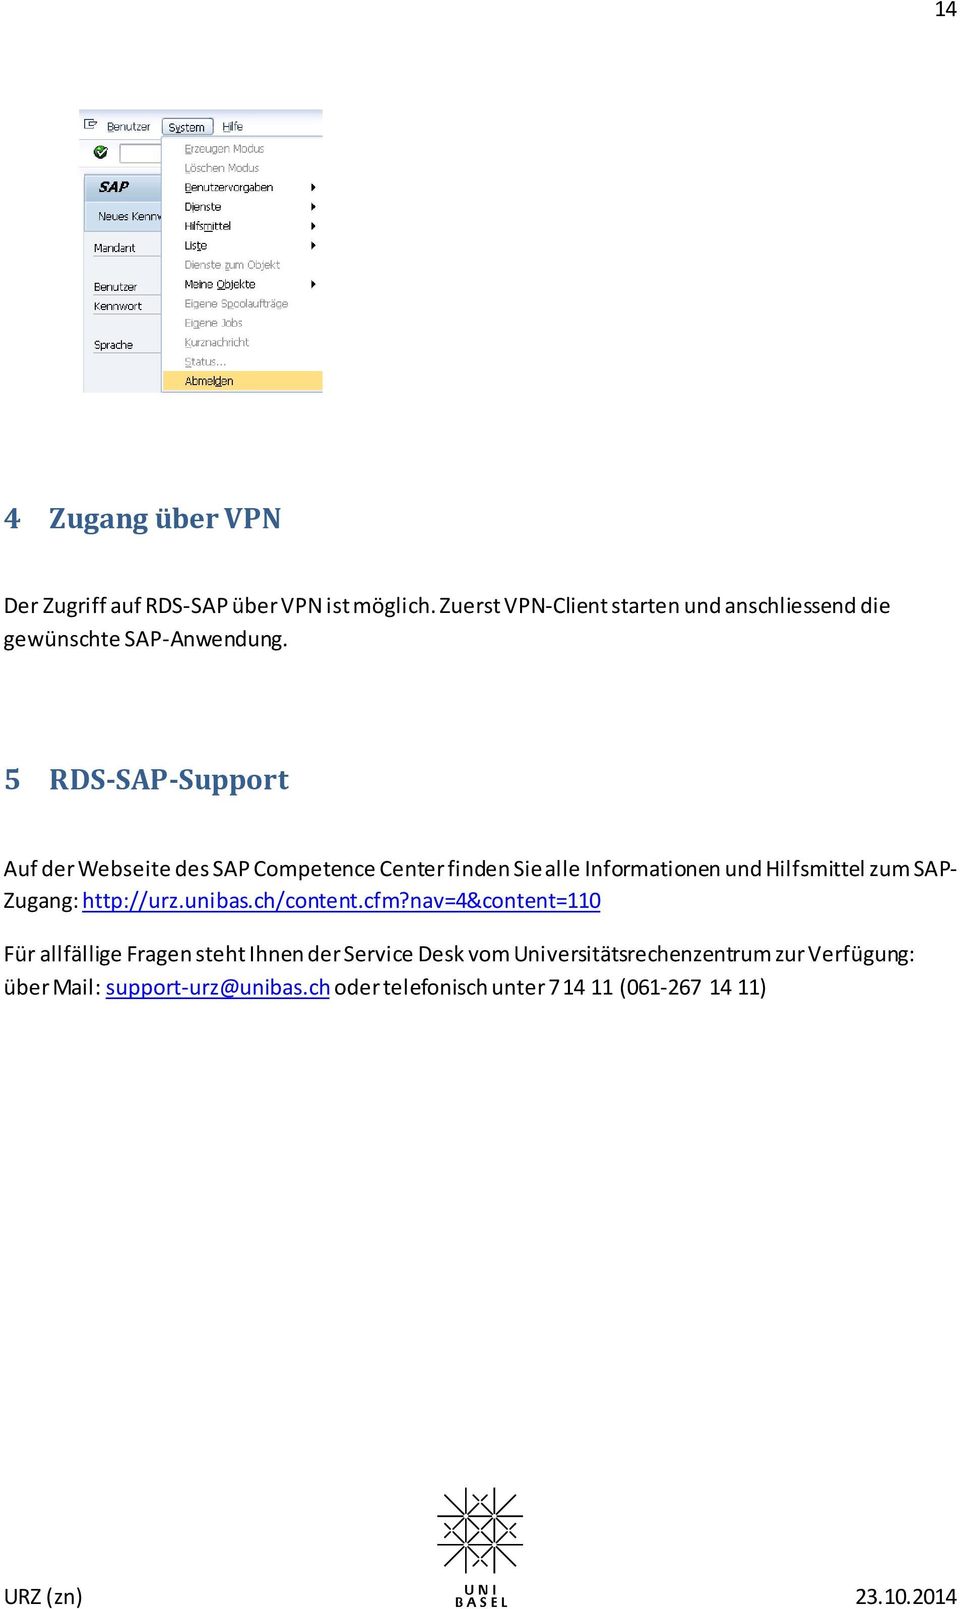 5 RDS-SAP-Support Auf der Webseite des SAP Competence Center finden Sie alle Informationen und Hilfsmittel zum SAP-